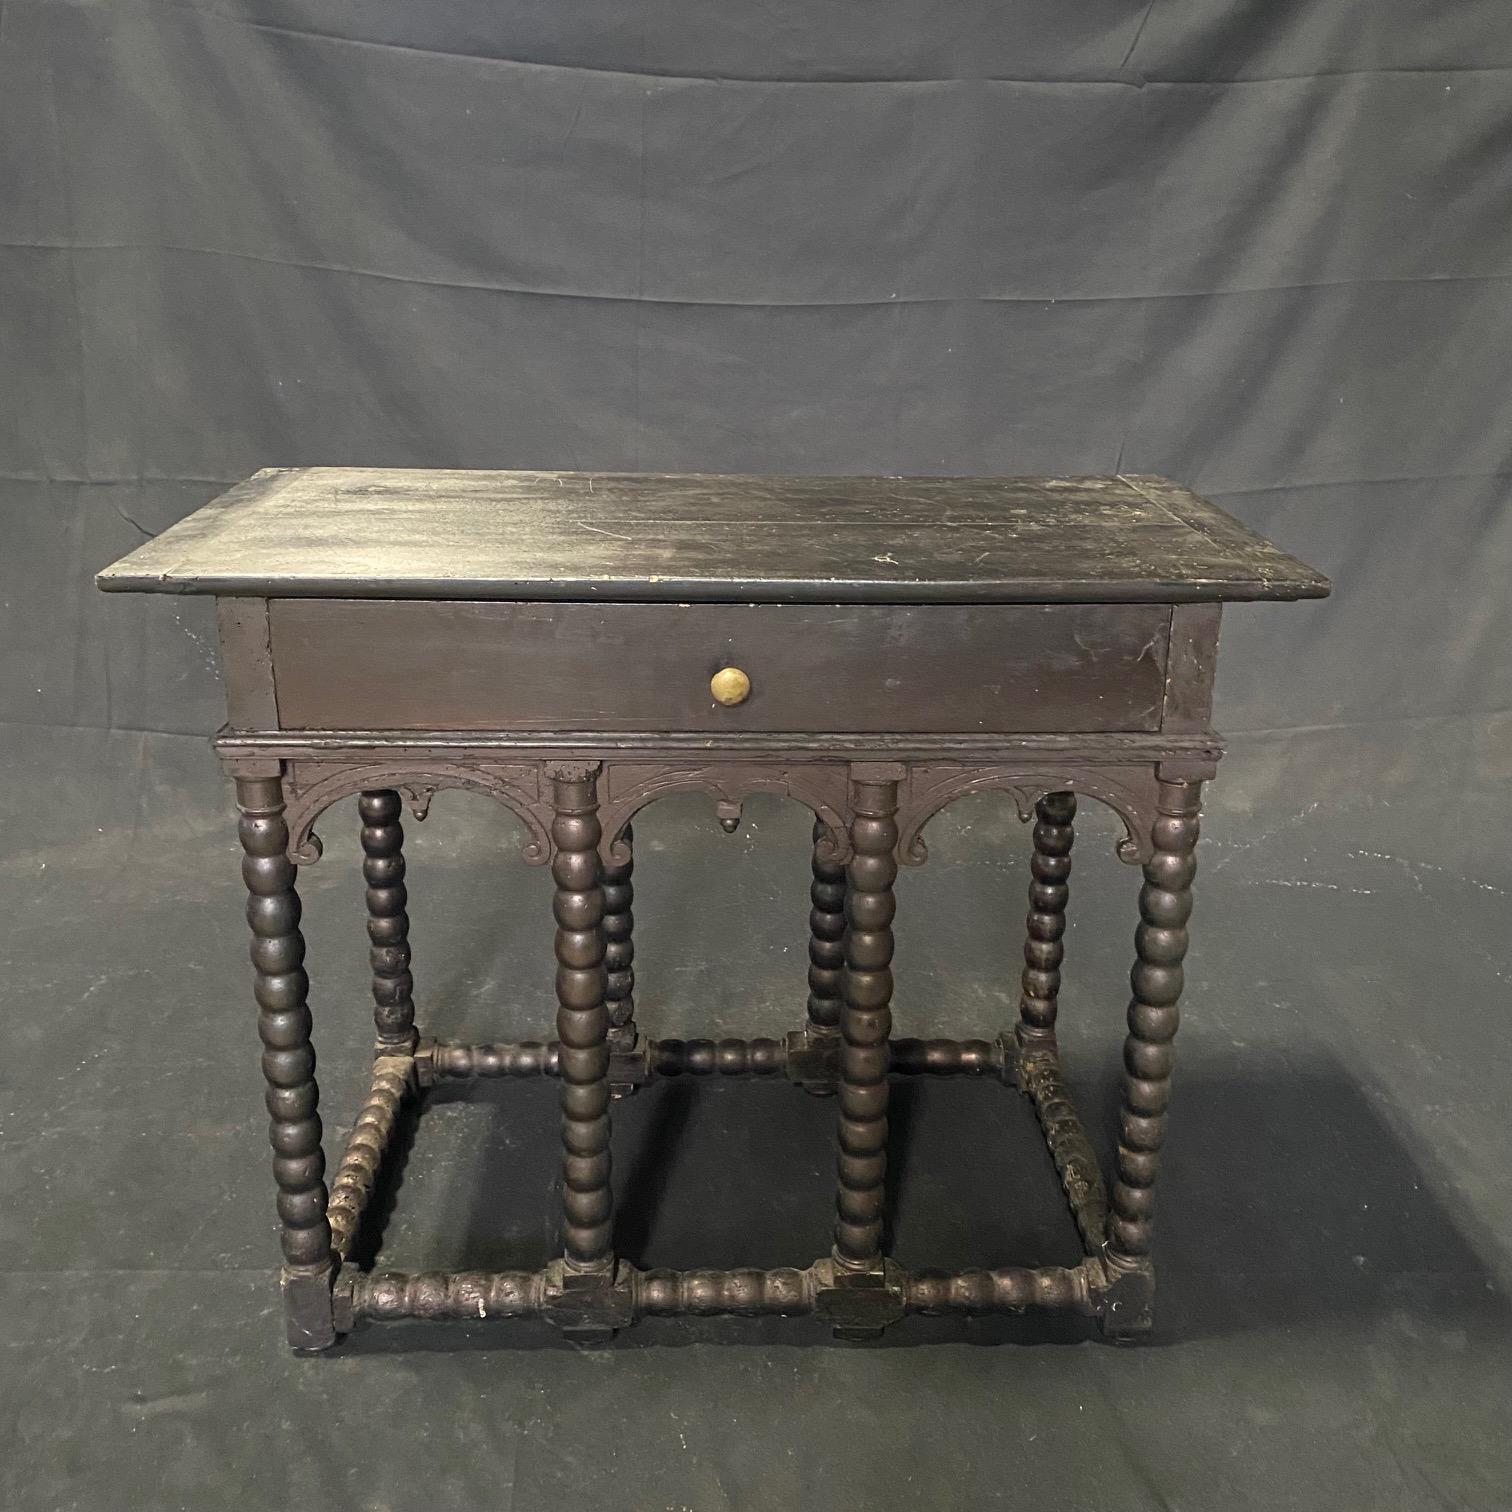  Der Konsolentisch aus Ebenholz aus dem 19. Jahrhundert wurde im Stil der Renaissance gefertigt und ist auch Napoleon III. nachempfunden, mit den frühen acht Gerstenknotenbeinen, die alle mit einer Gerstenknotenstreckbank verbunden sind. Was diesen